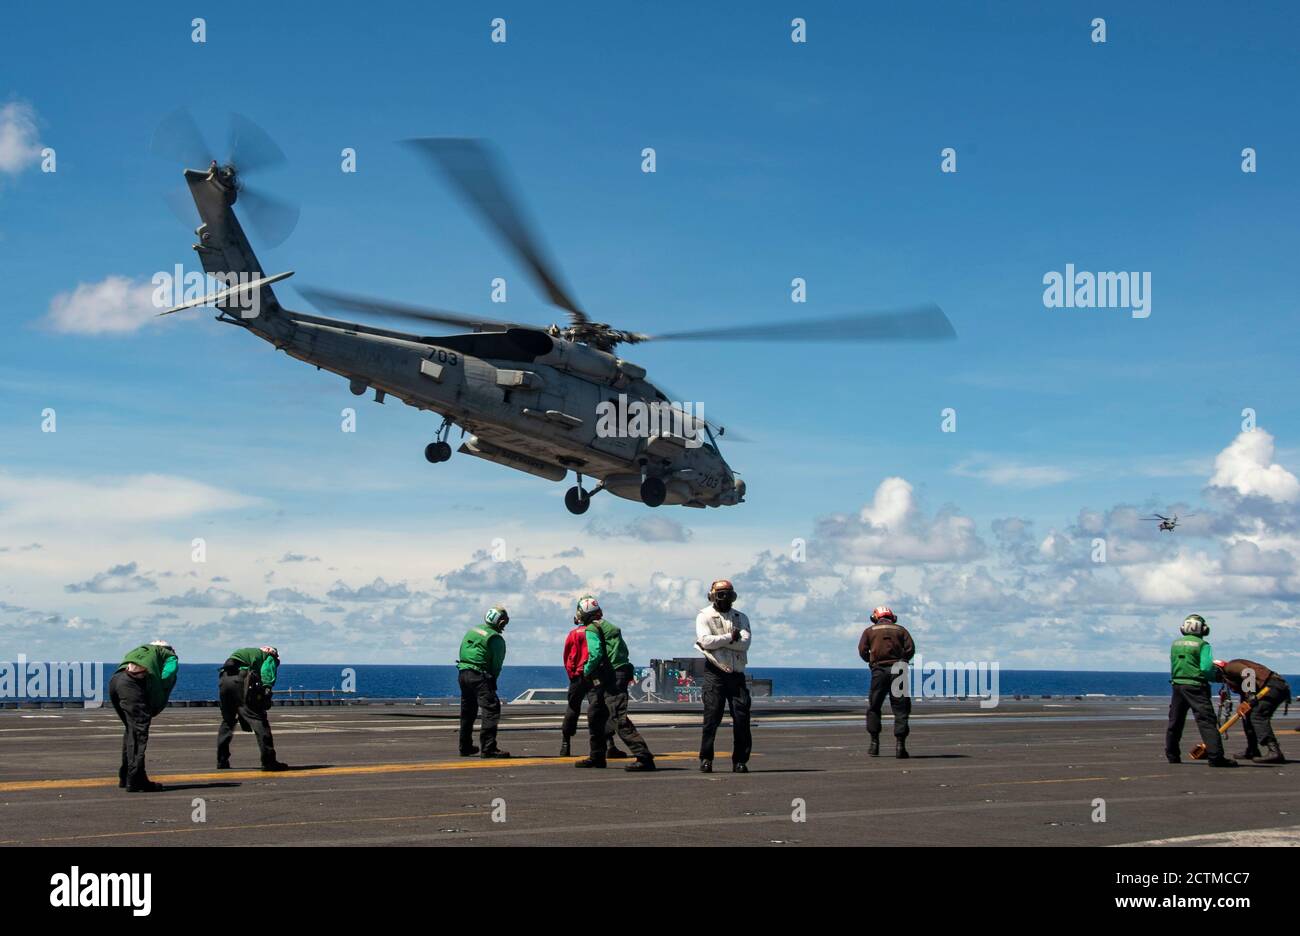 200923-N-DL524-1213 MAR DE FILIPINAS (SEPT 23, 2020) un halcón marino MH-60R, a la izquierda, adjunto a los Saberhawks del escuadrón de la huelga marítima del helicóptero (HSM) 77, Y un hidroavión MH-60S, adjunto a los Falcones de Oro del escuadrón de combate del Mar de helicóptero (HSC) 12, despegó de la cubierta de vuelo del único portaaviones de despliegue avanzado USS Ronald Reagan (CVN 76) de la Marina en apoyo de Valiant Shield 2020. Valiant Shield es un ejercicio bienal de entrenamiento de campo (FTX), solo en los Estados Unidos, con un enfoque en la integración de entrenamiento conjunto en un ambiente de aguas azules entre las fuerzas de los Estados Unidos. Esta formación permite la proficici del mundo real Foto de stock